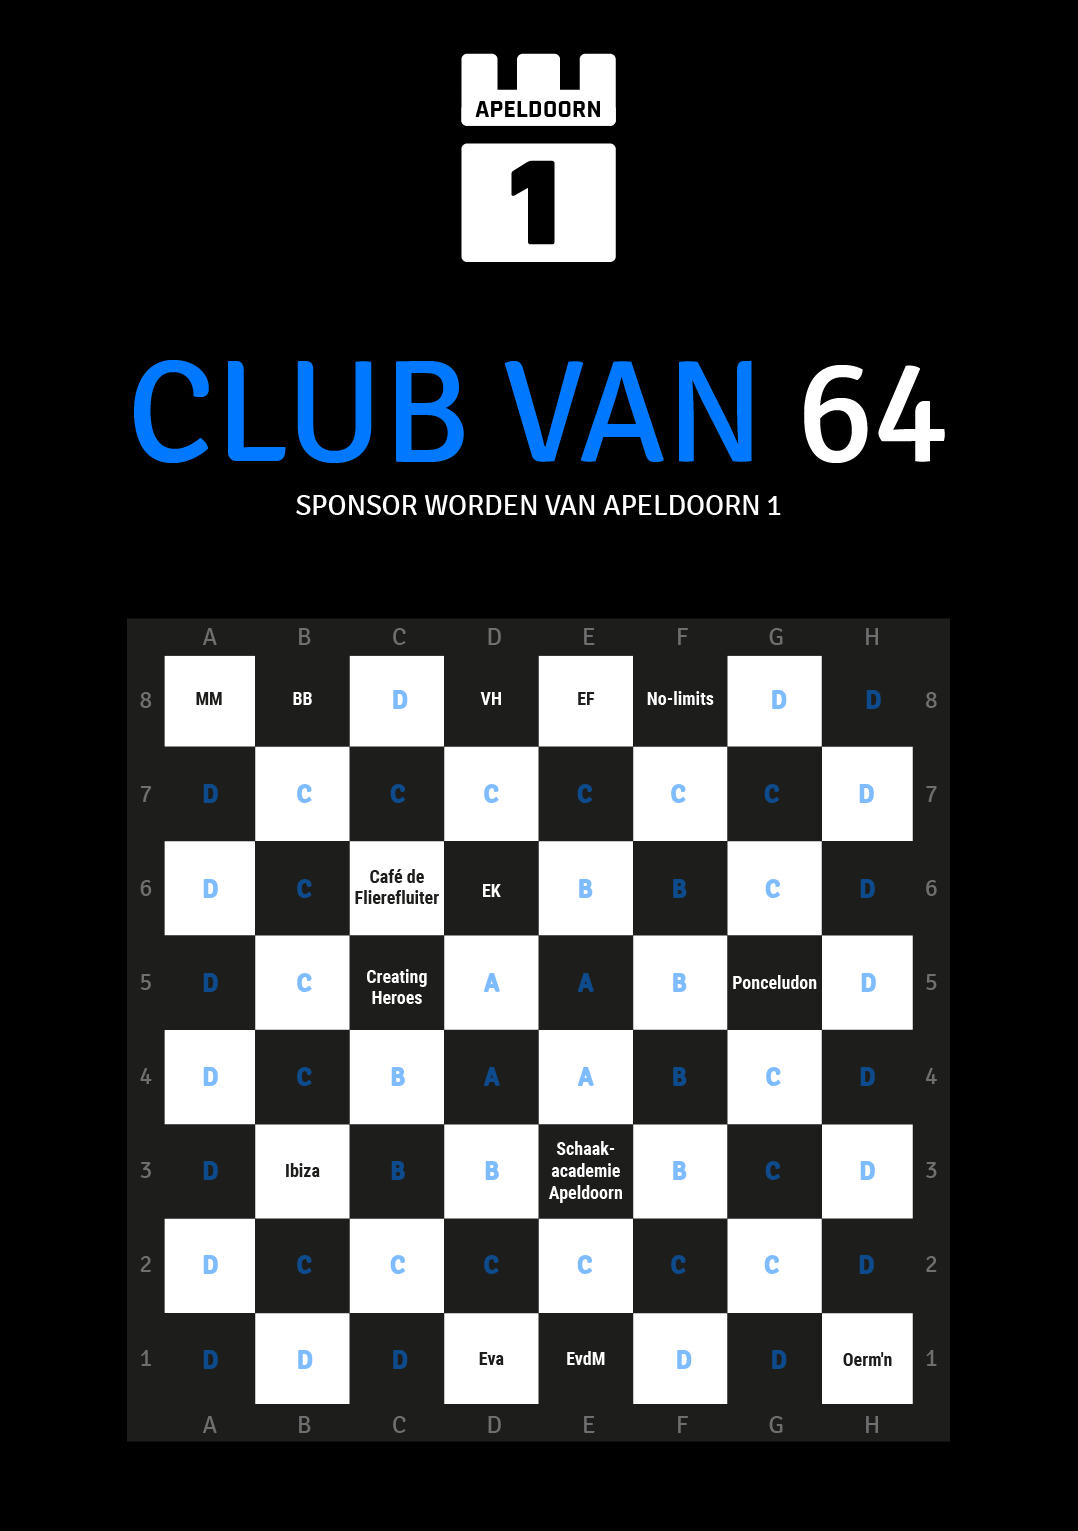 Club van 64